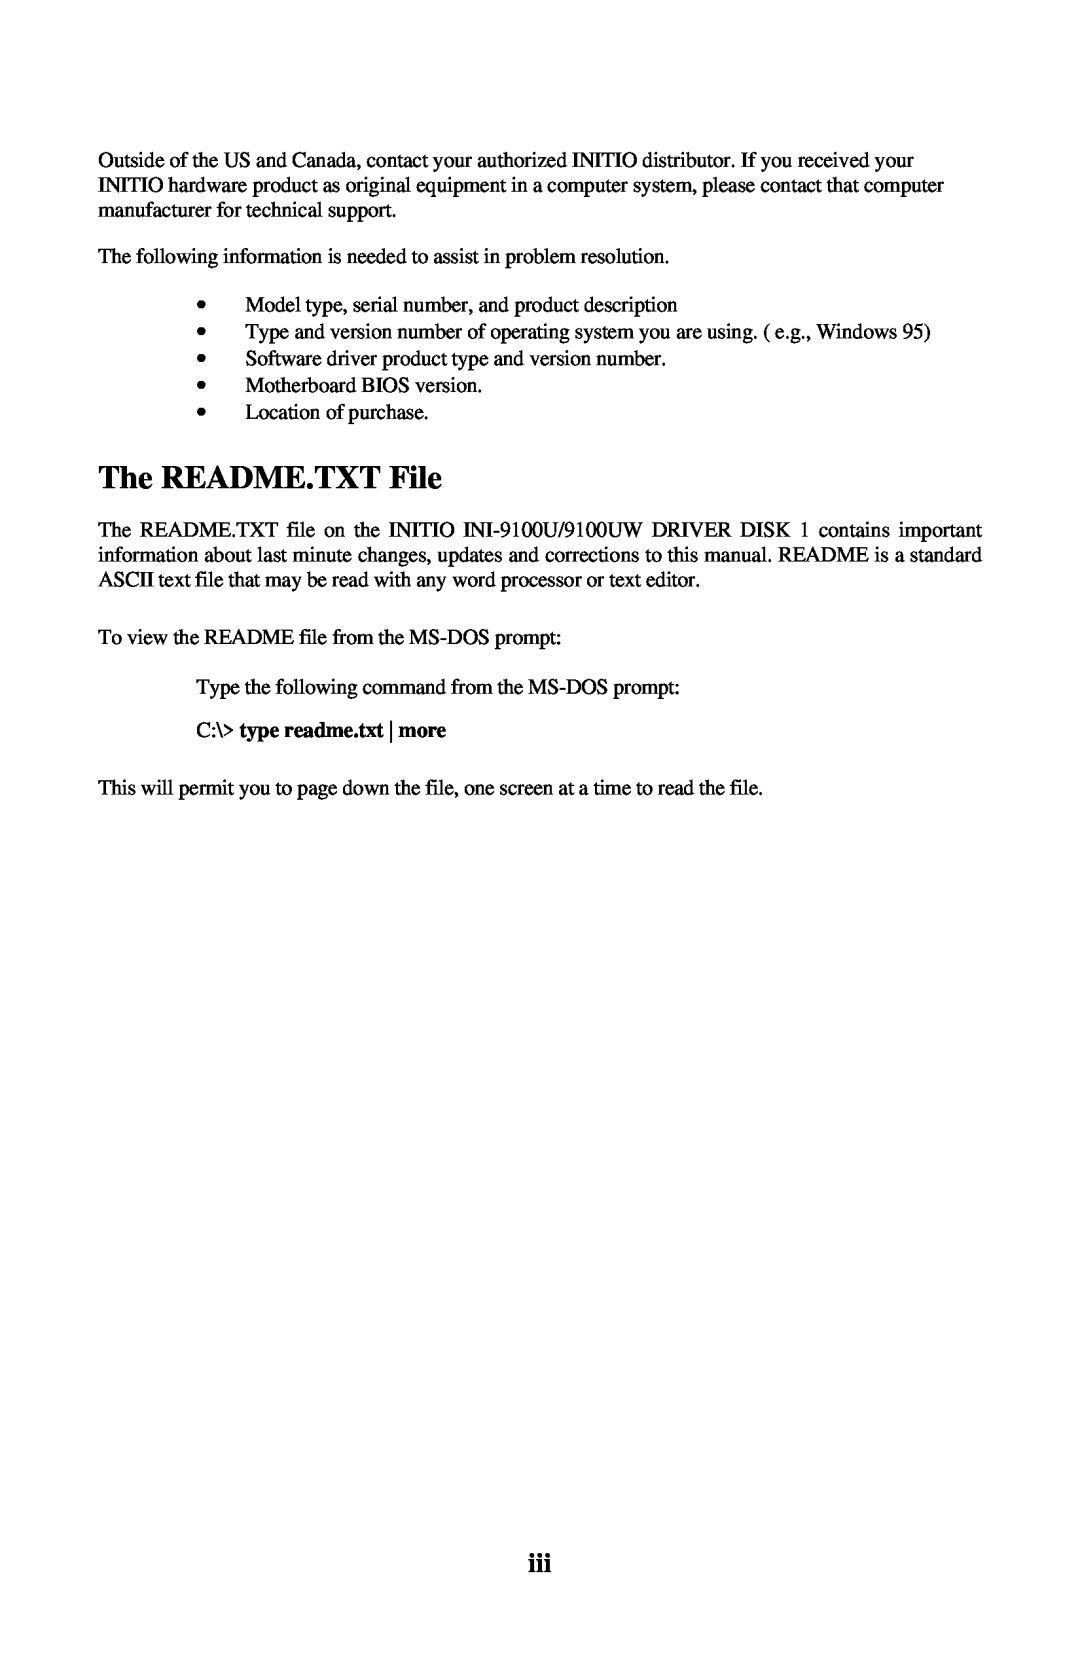 Initio INI-9100UW user manual The README.TXT File, C\ type readme.txt more 